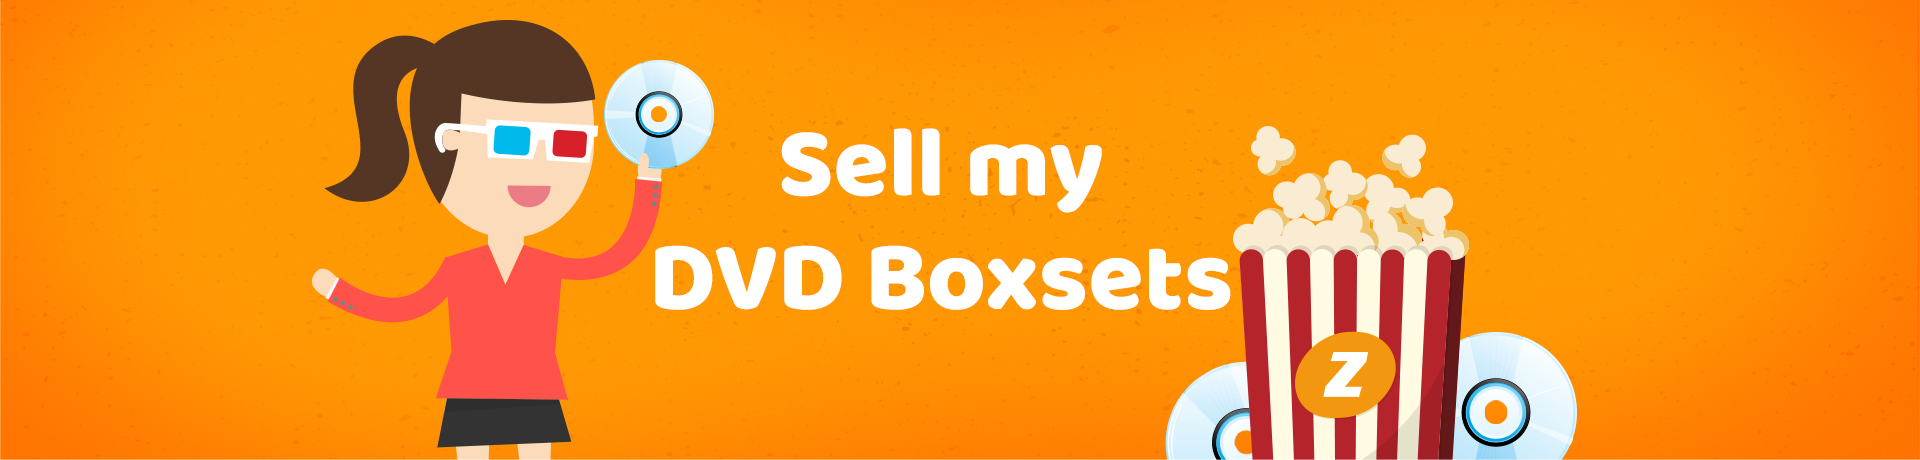 Sell DVD Boxsets